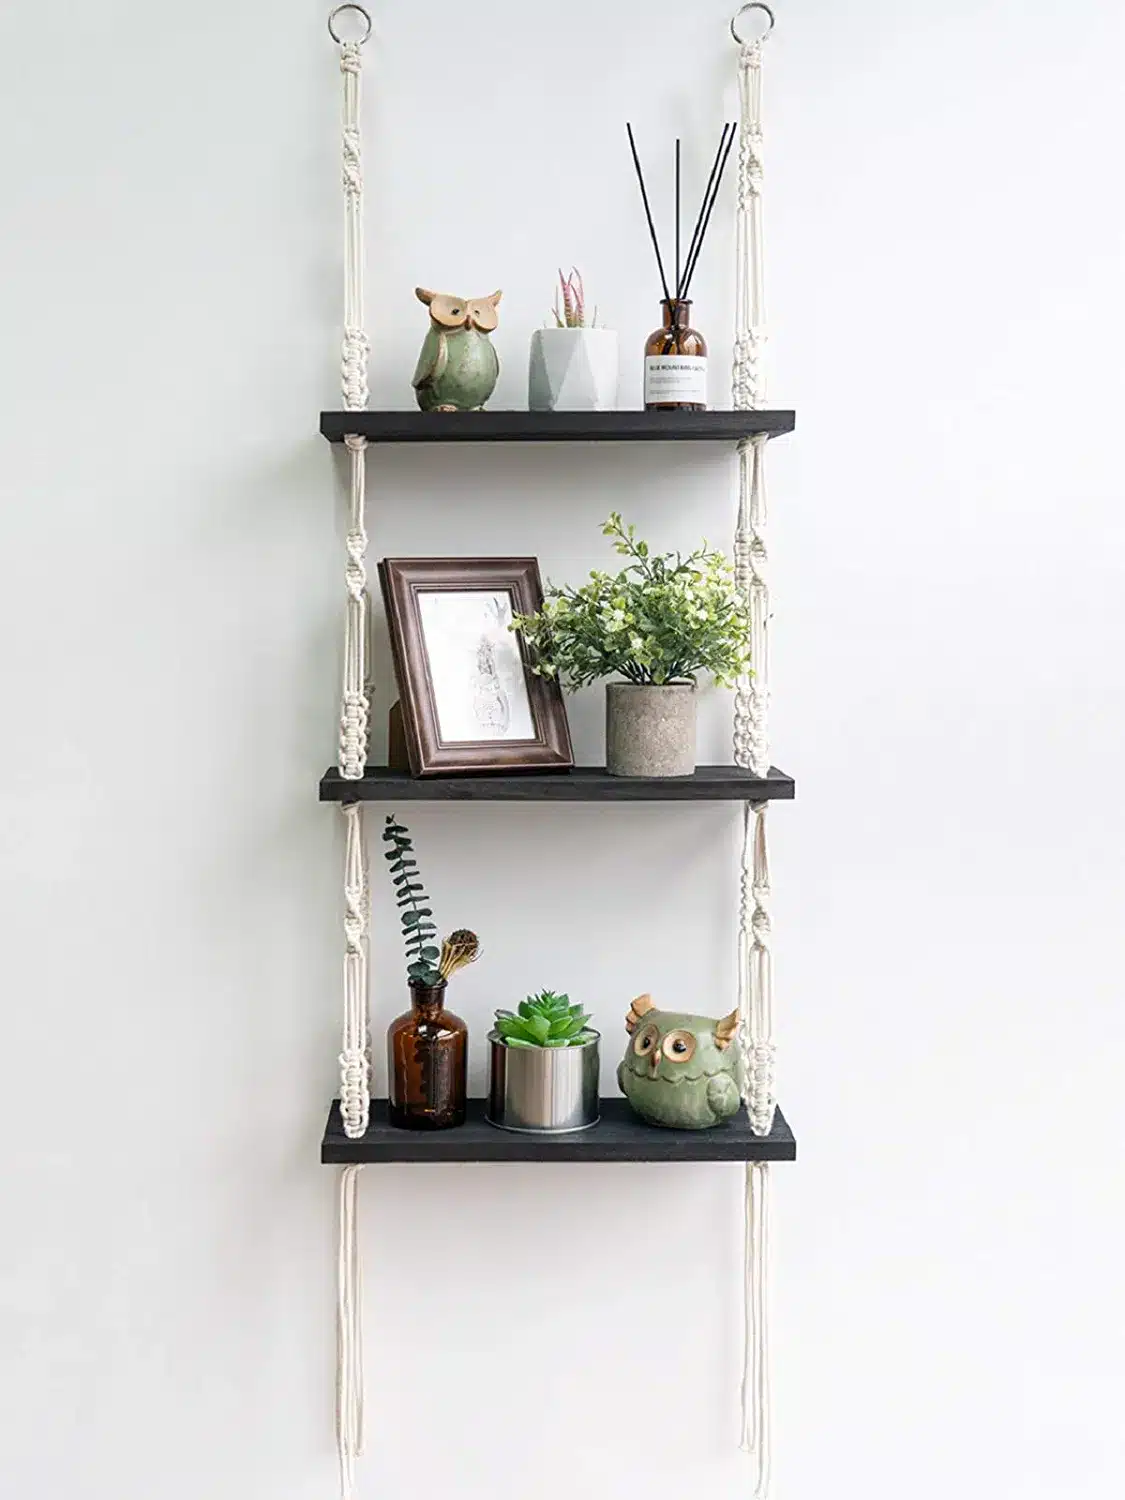 TIMEYARD Macrame Shelf Hanging Shelves